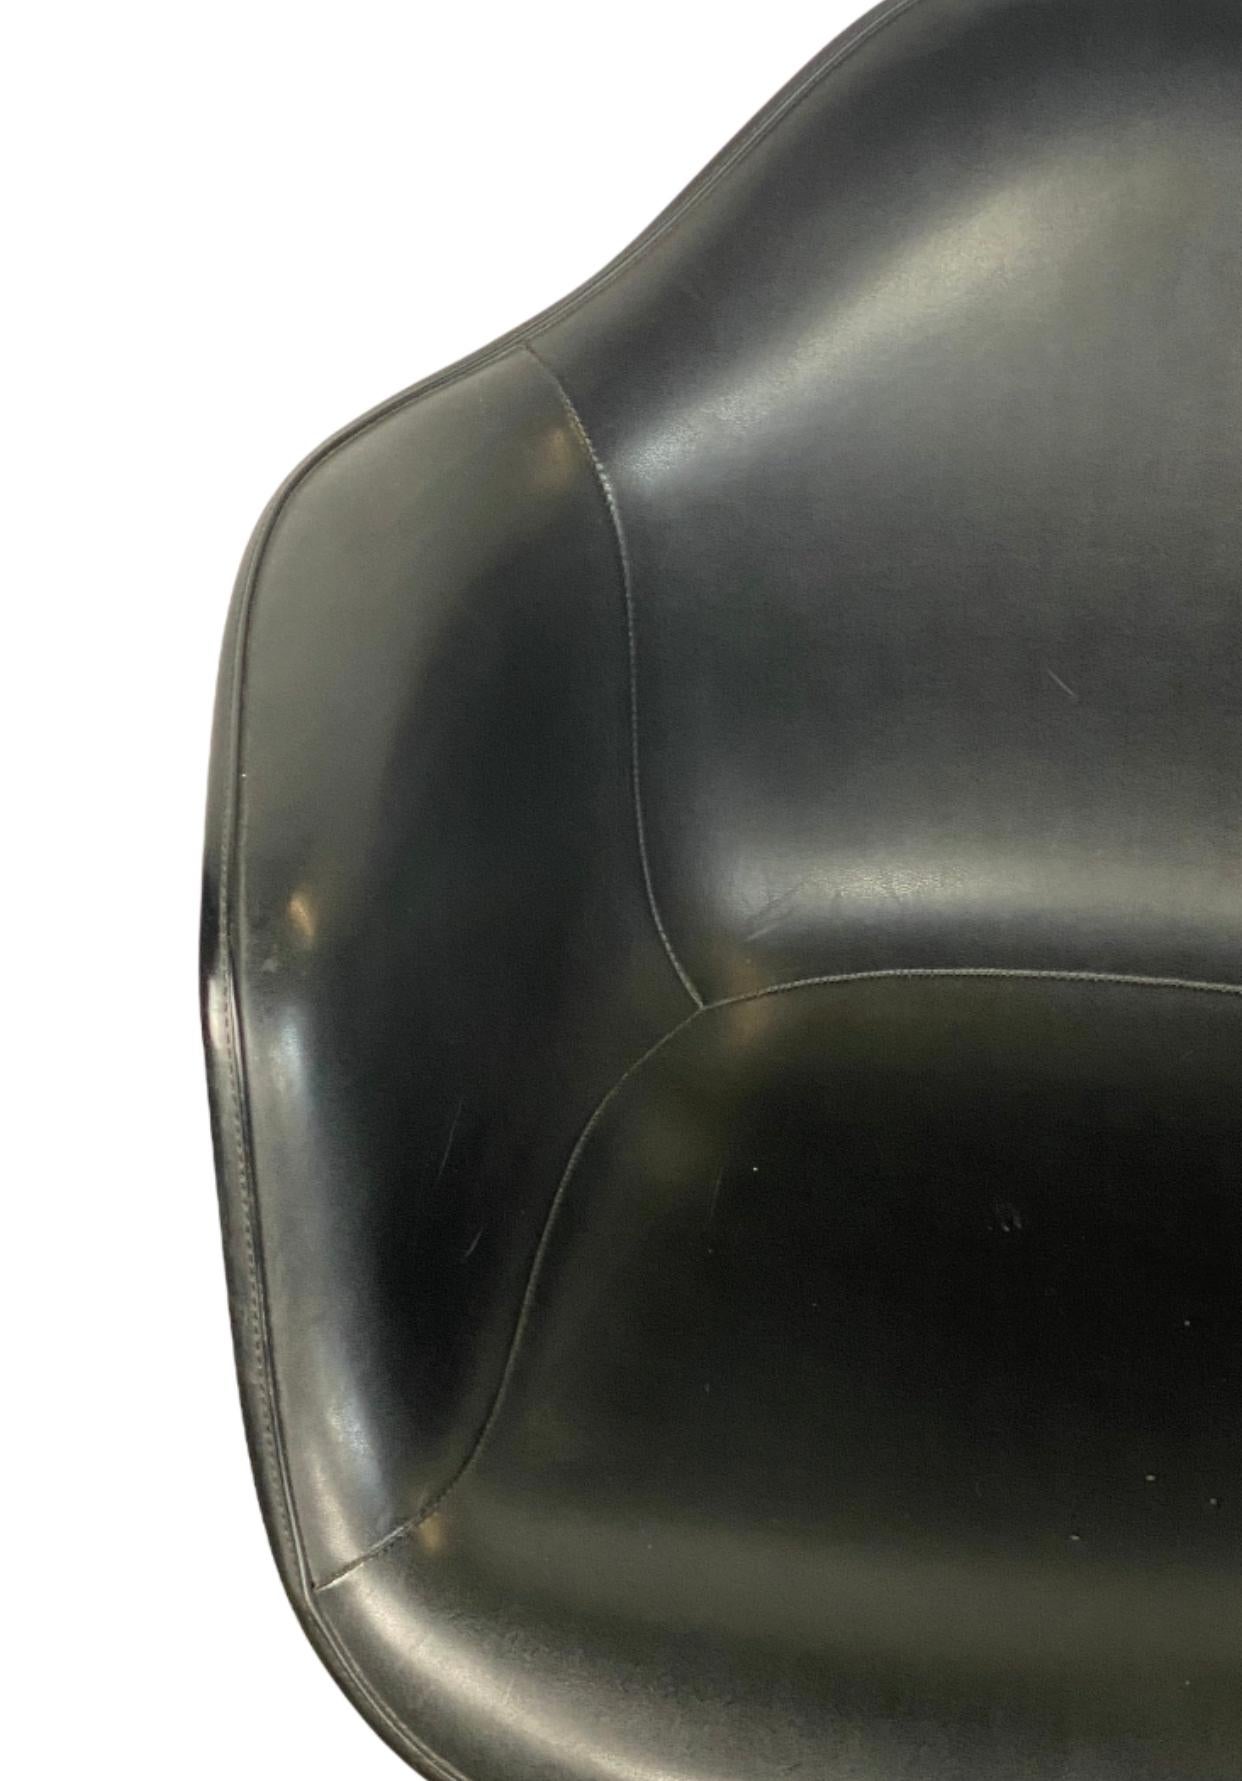 Excellent exemple de la chaise de bureau classique des Eames. Coque en fibre de verre moulée doublée de Naugahyde pour la durabilité et le confort. Roule et pivote sur une base en aluminium moulé. La hauteur se règle facilement en tournant la chaise